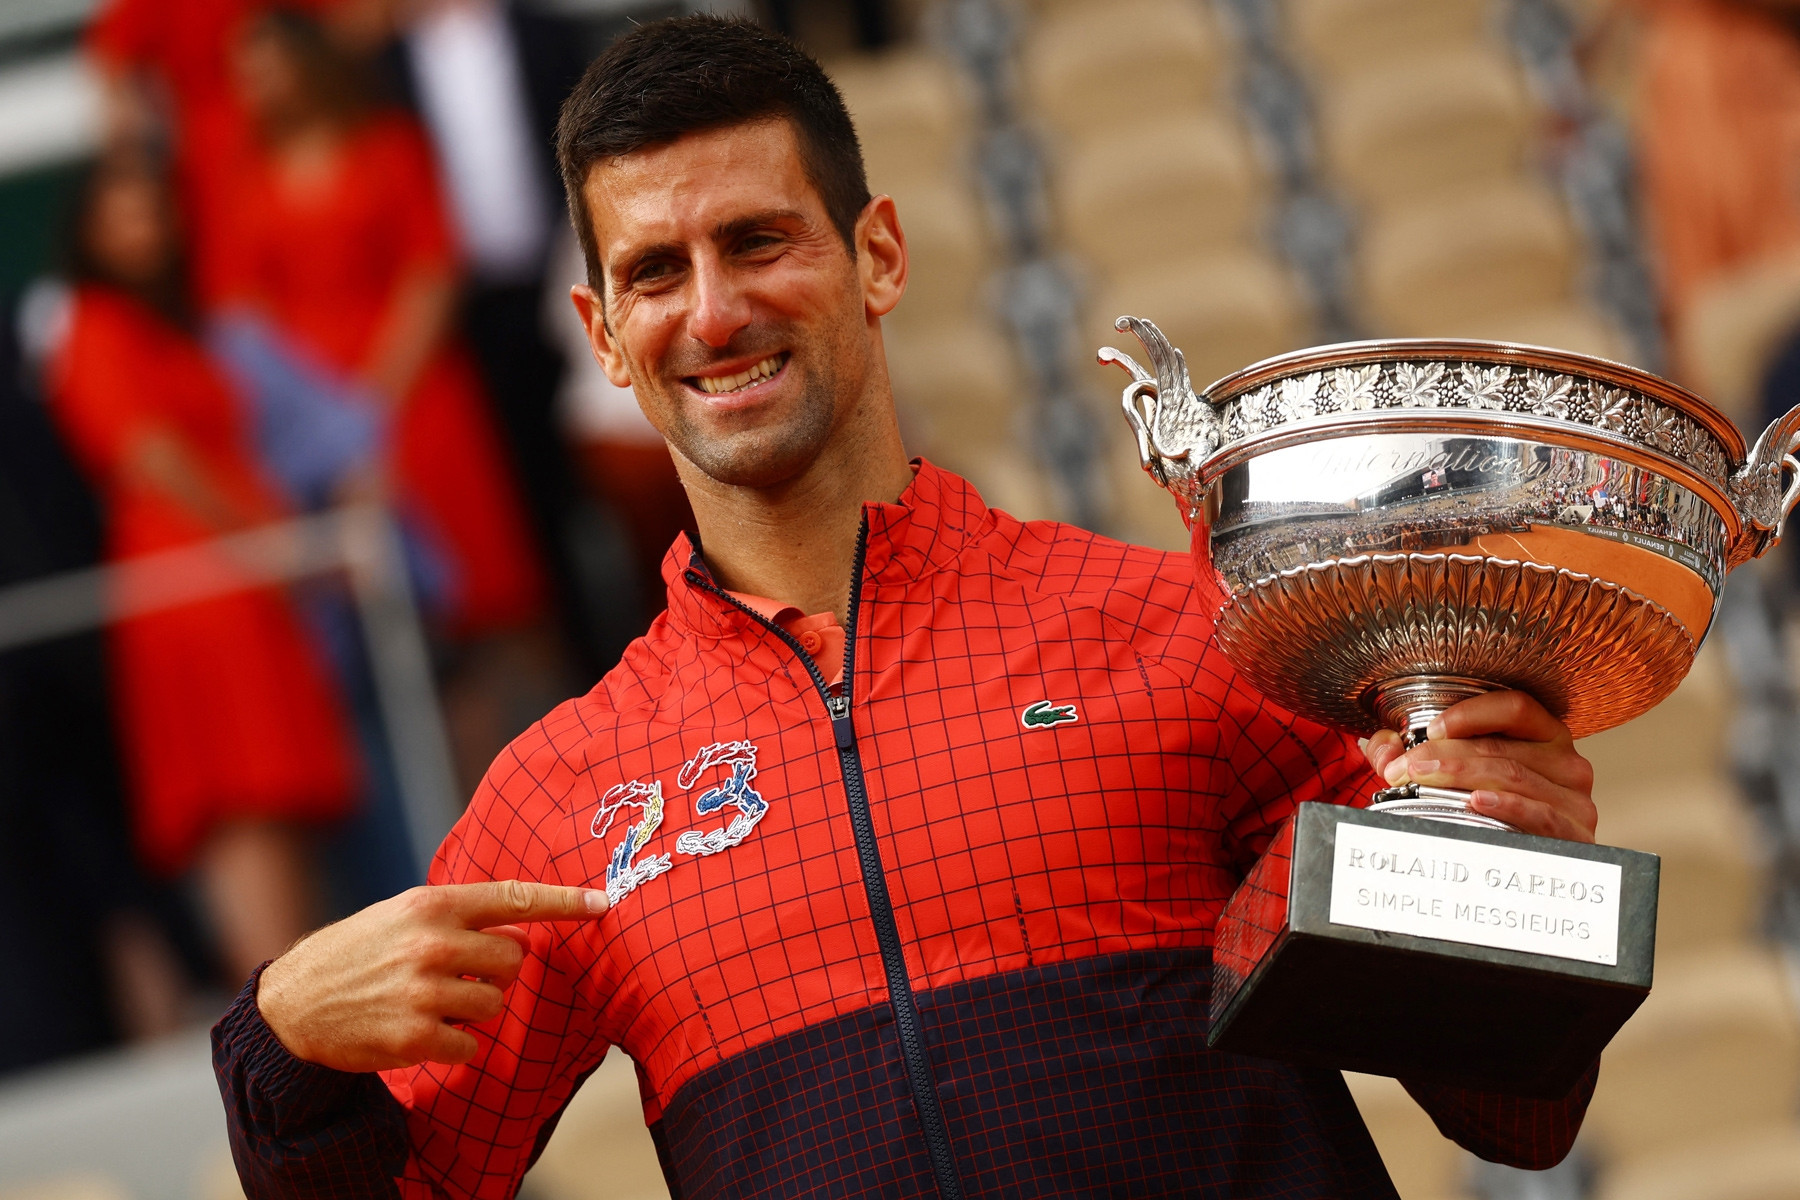 Novak Djokovic vô địch Roland Garros: Biểu tượng lịch sử